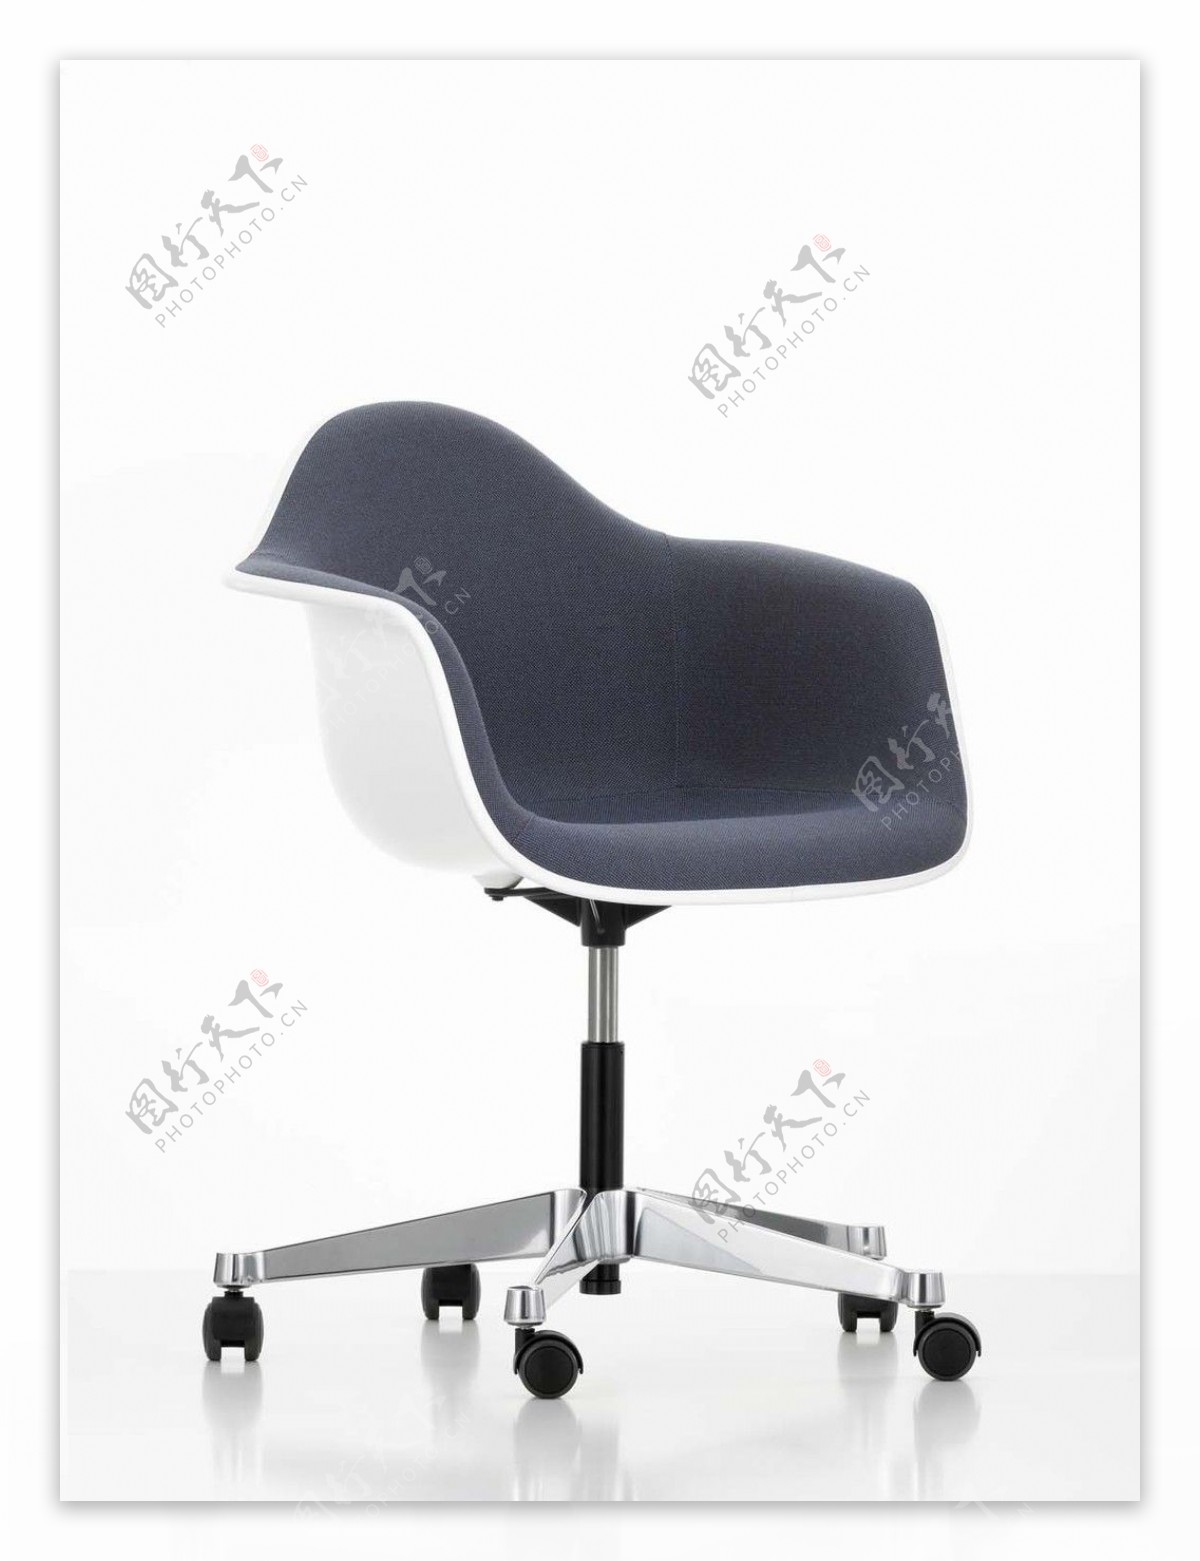 现代简约时尚可移动椅子3d模型